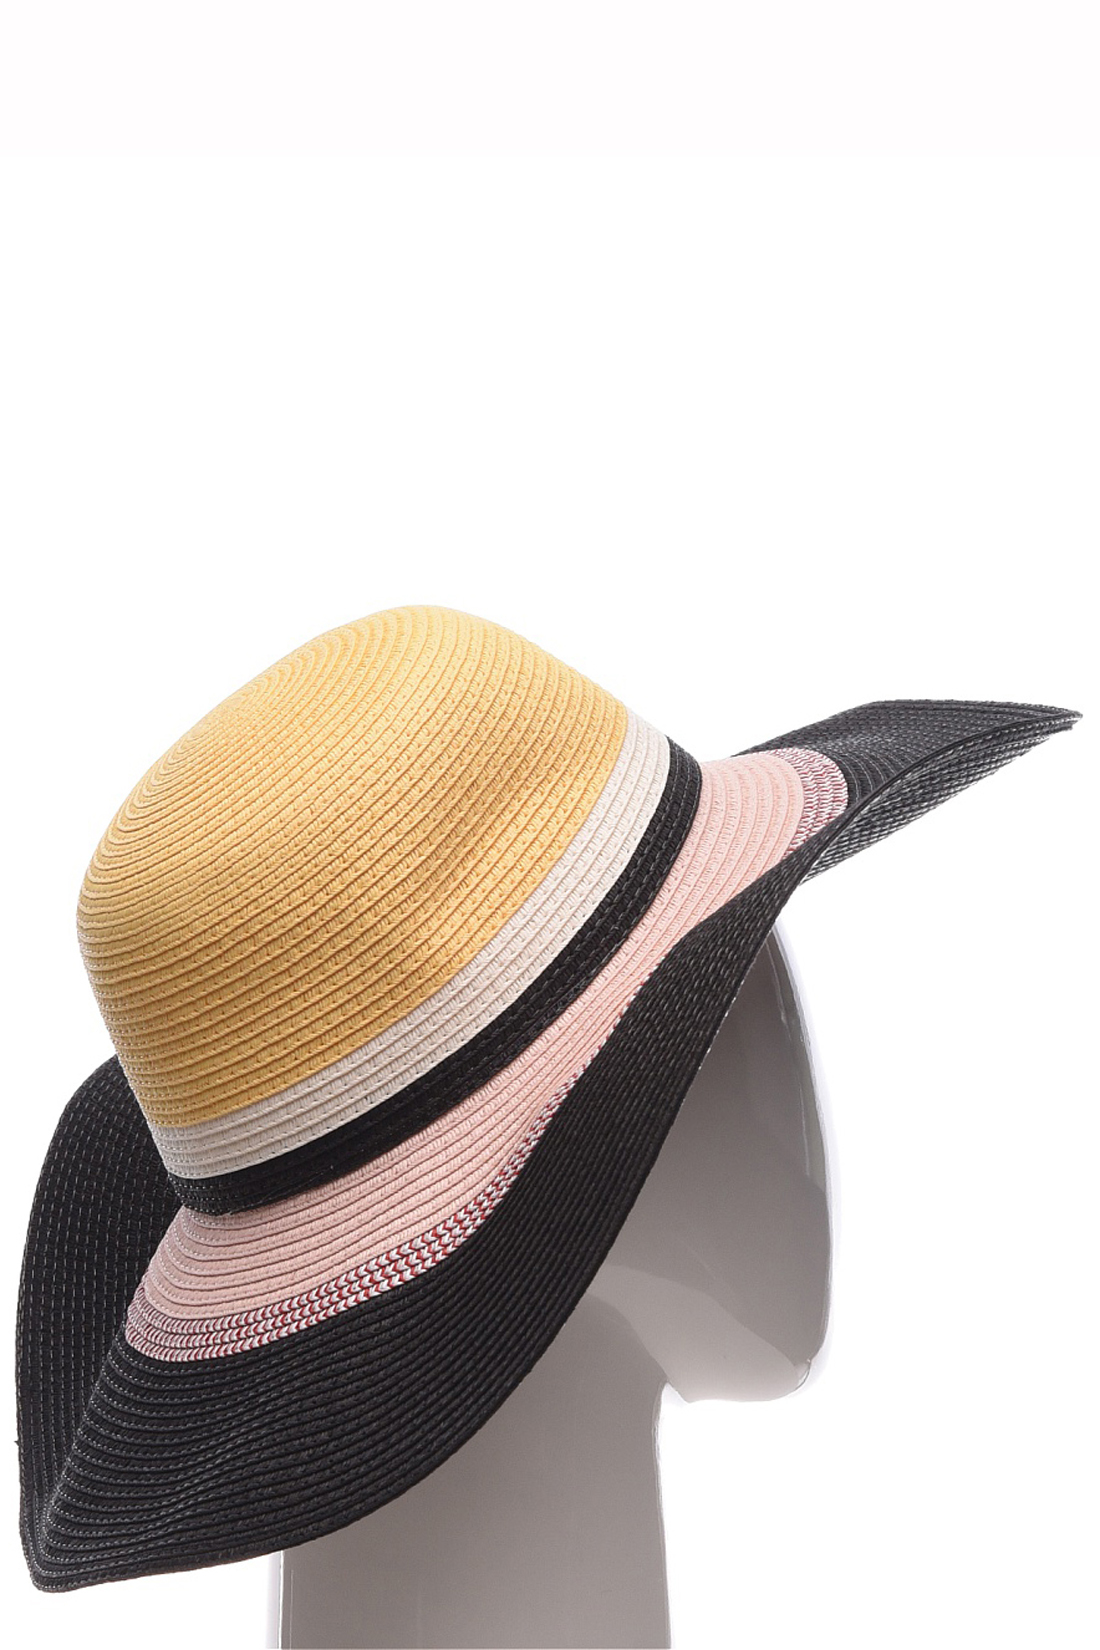 Шляпа с широкими полосами (арт. baon B349002), размер Б/р 56, цвет multicolor#многоцветный Шляпа с широкими полосами (арт. baon B349002) - фото 2